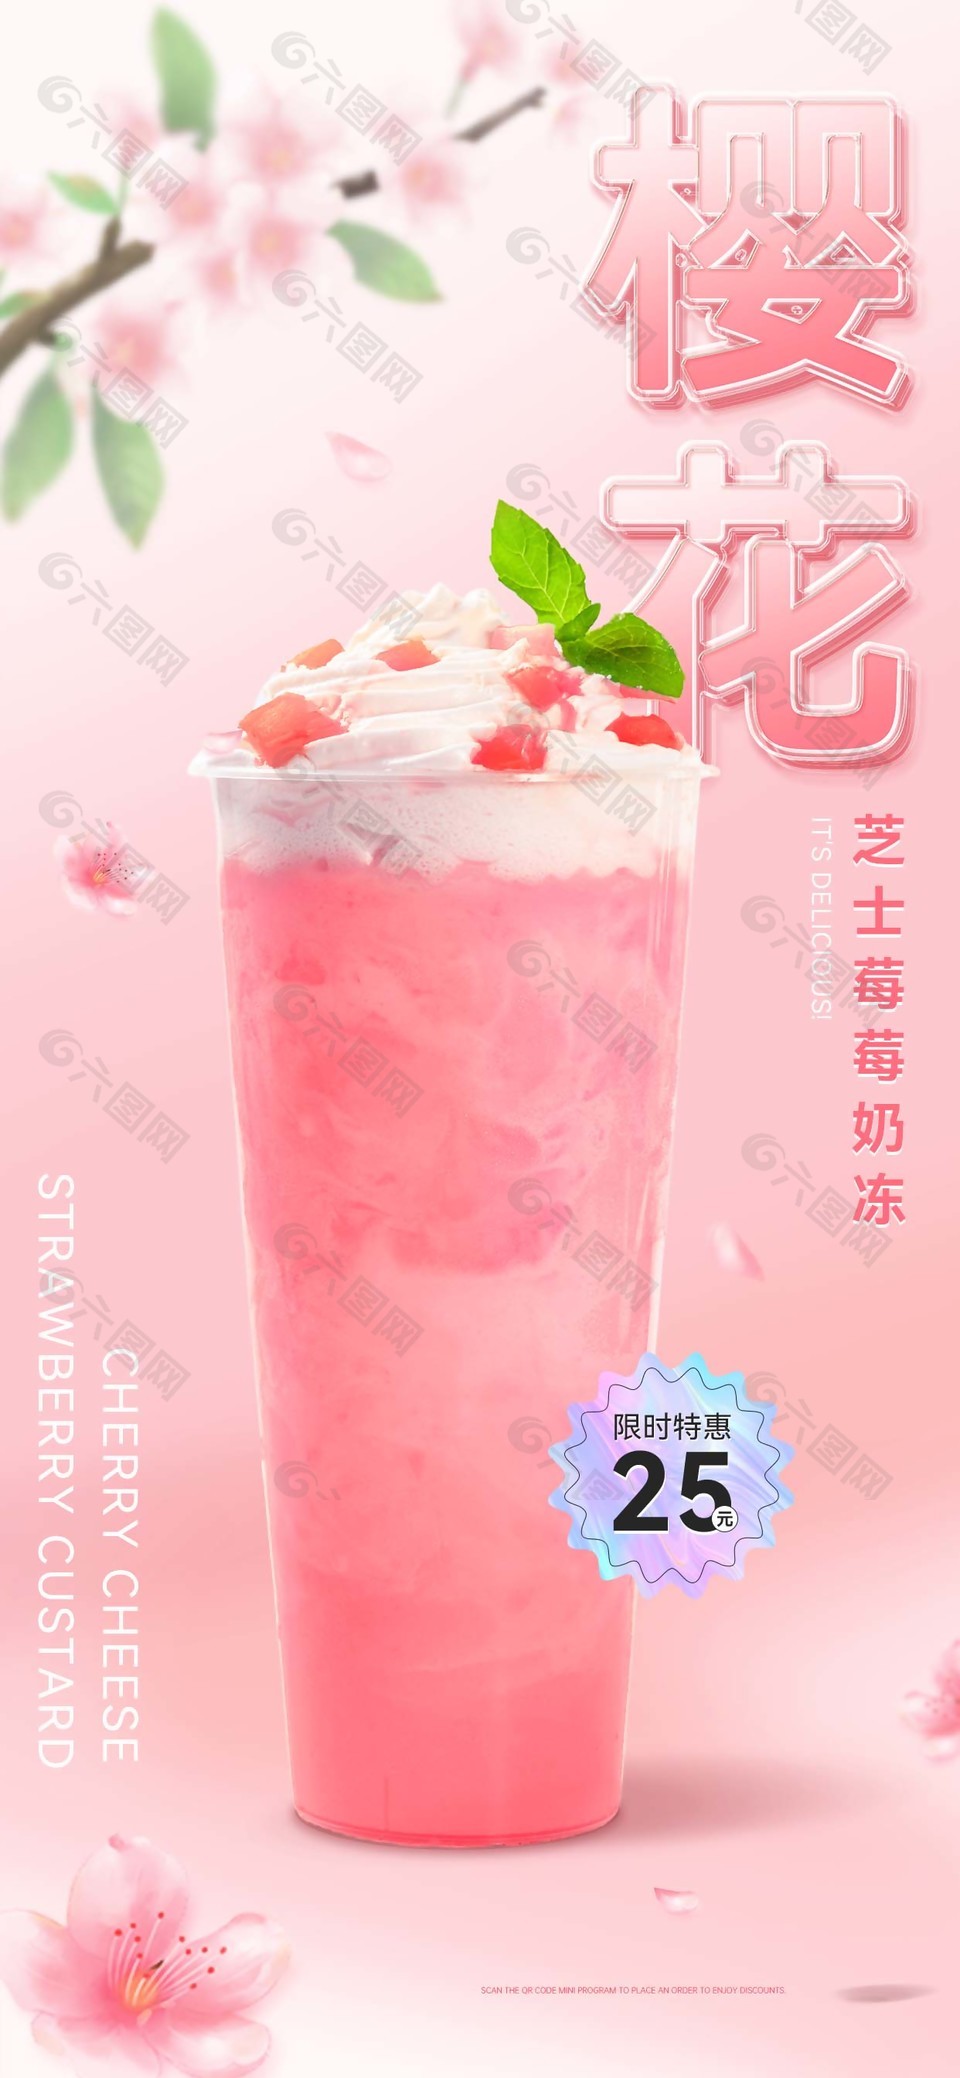 樱花奶茶质感海报设计